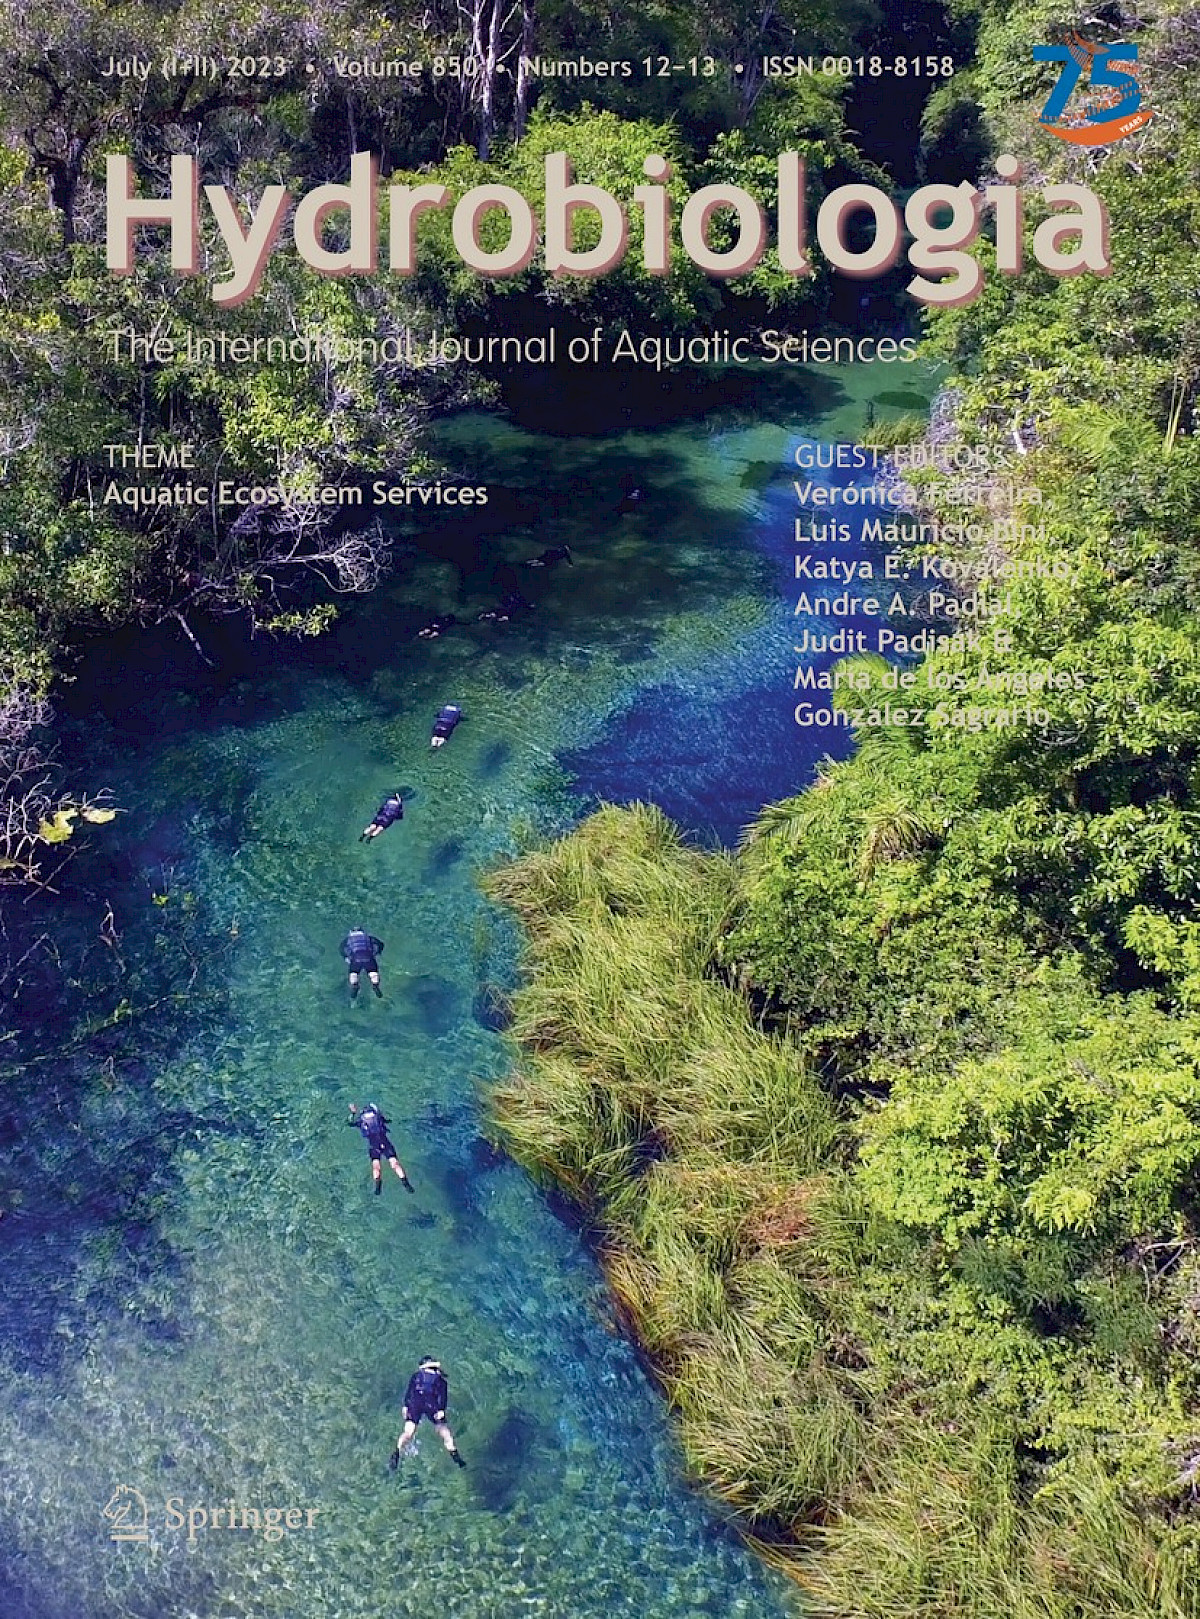 Flutuação no Recanto Ecológico Rio da Prata é destaque de capa da Revista Hydrobiologia